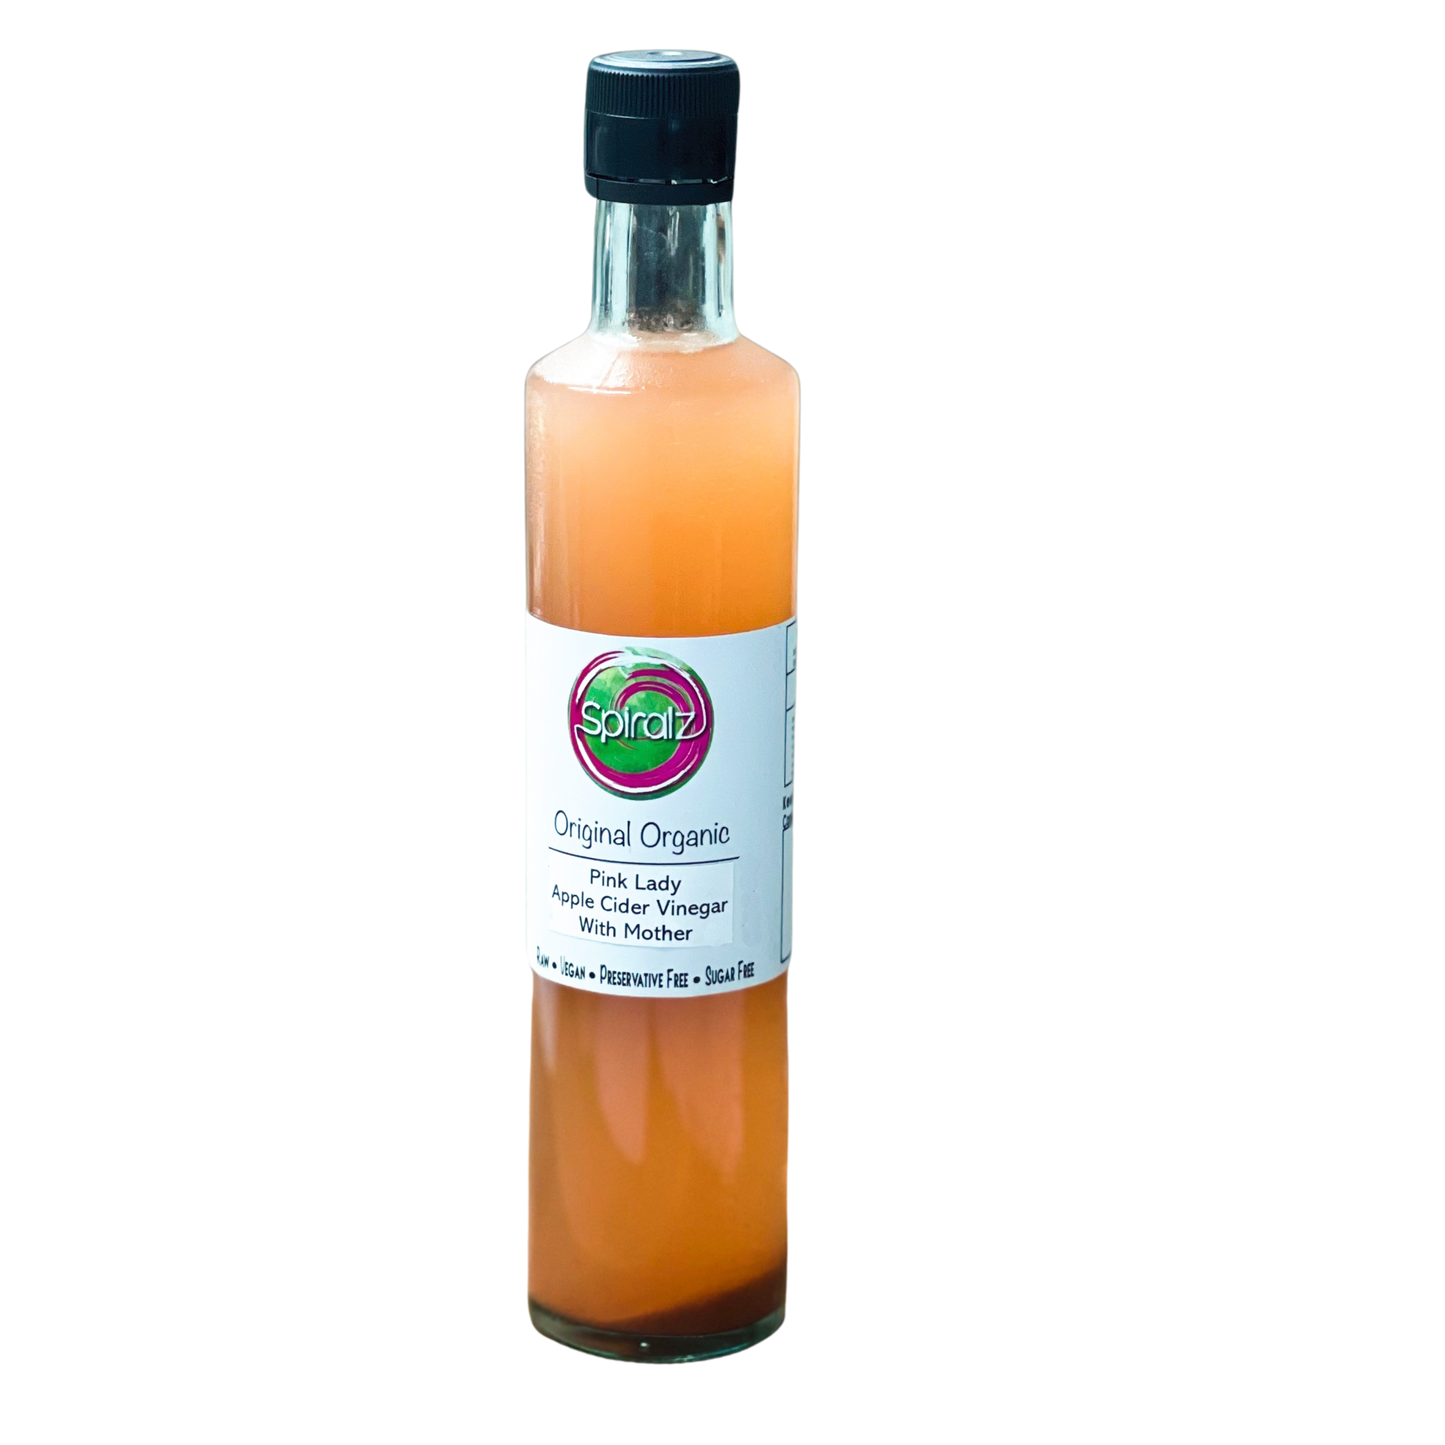 Oganic Pink Lady Apple Cider Vinegar with Mother